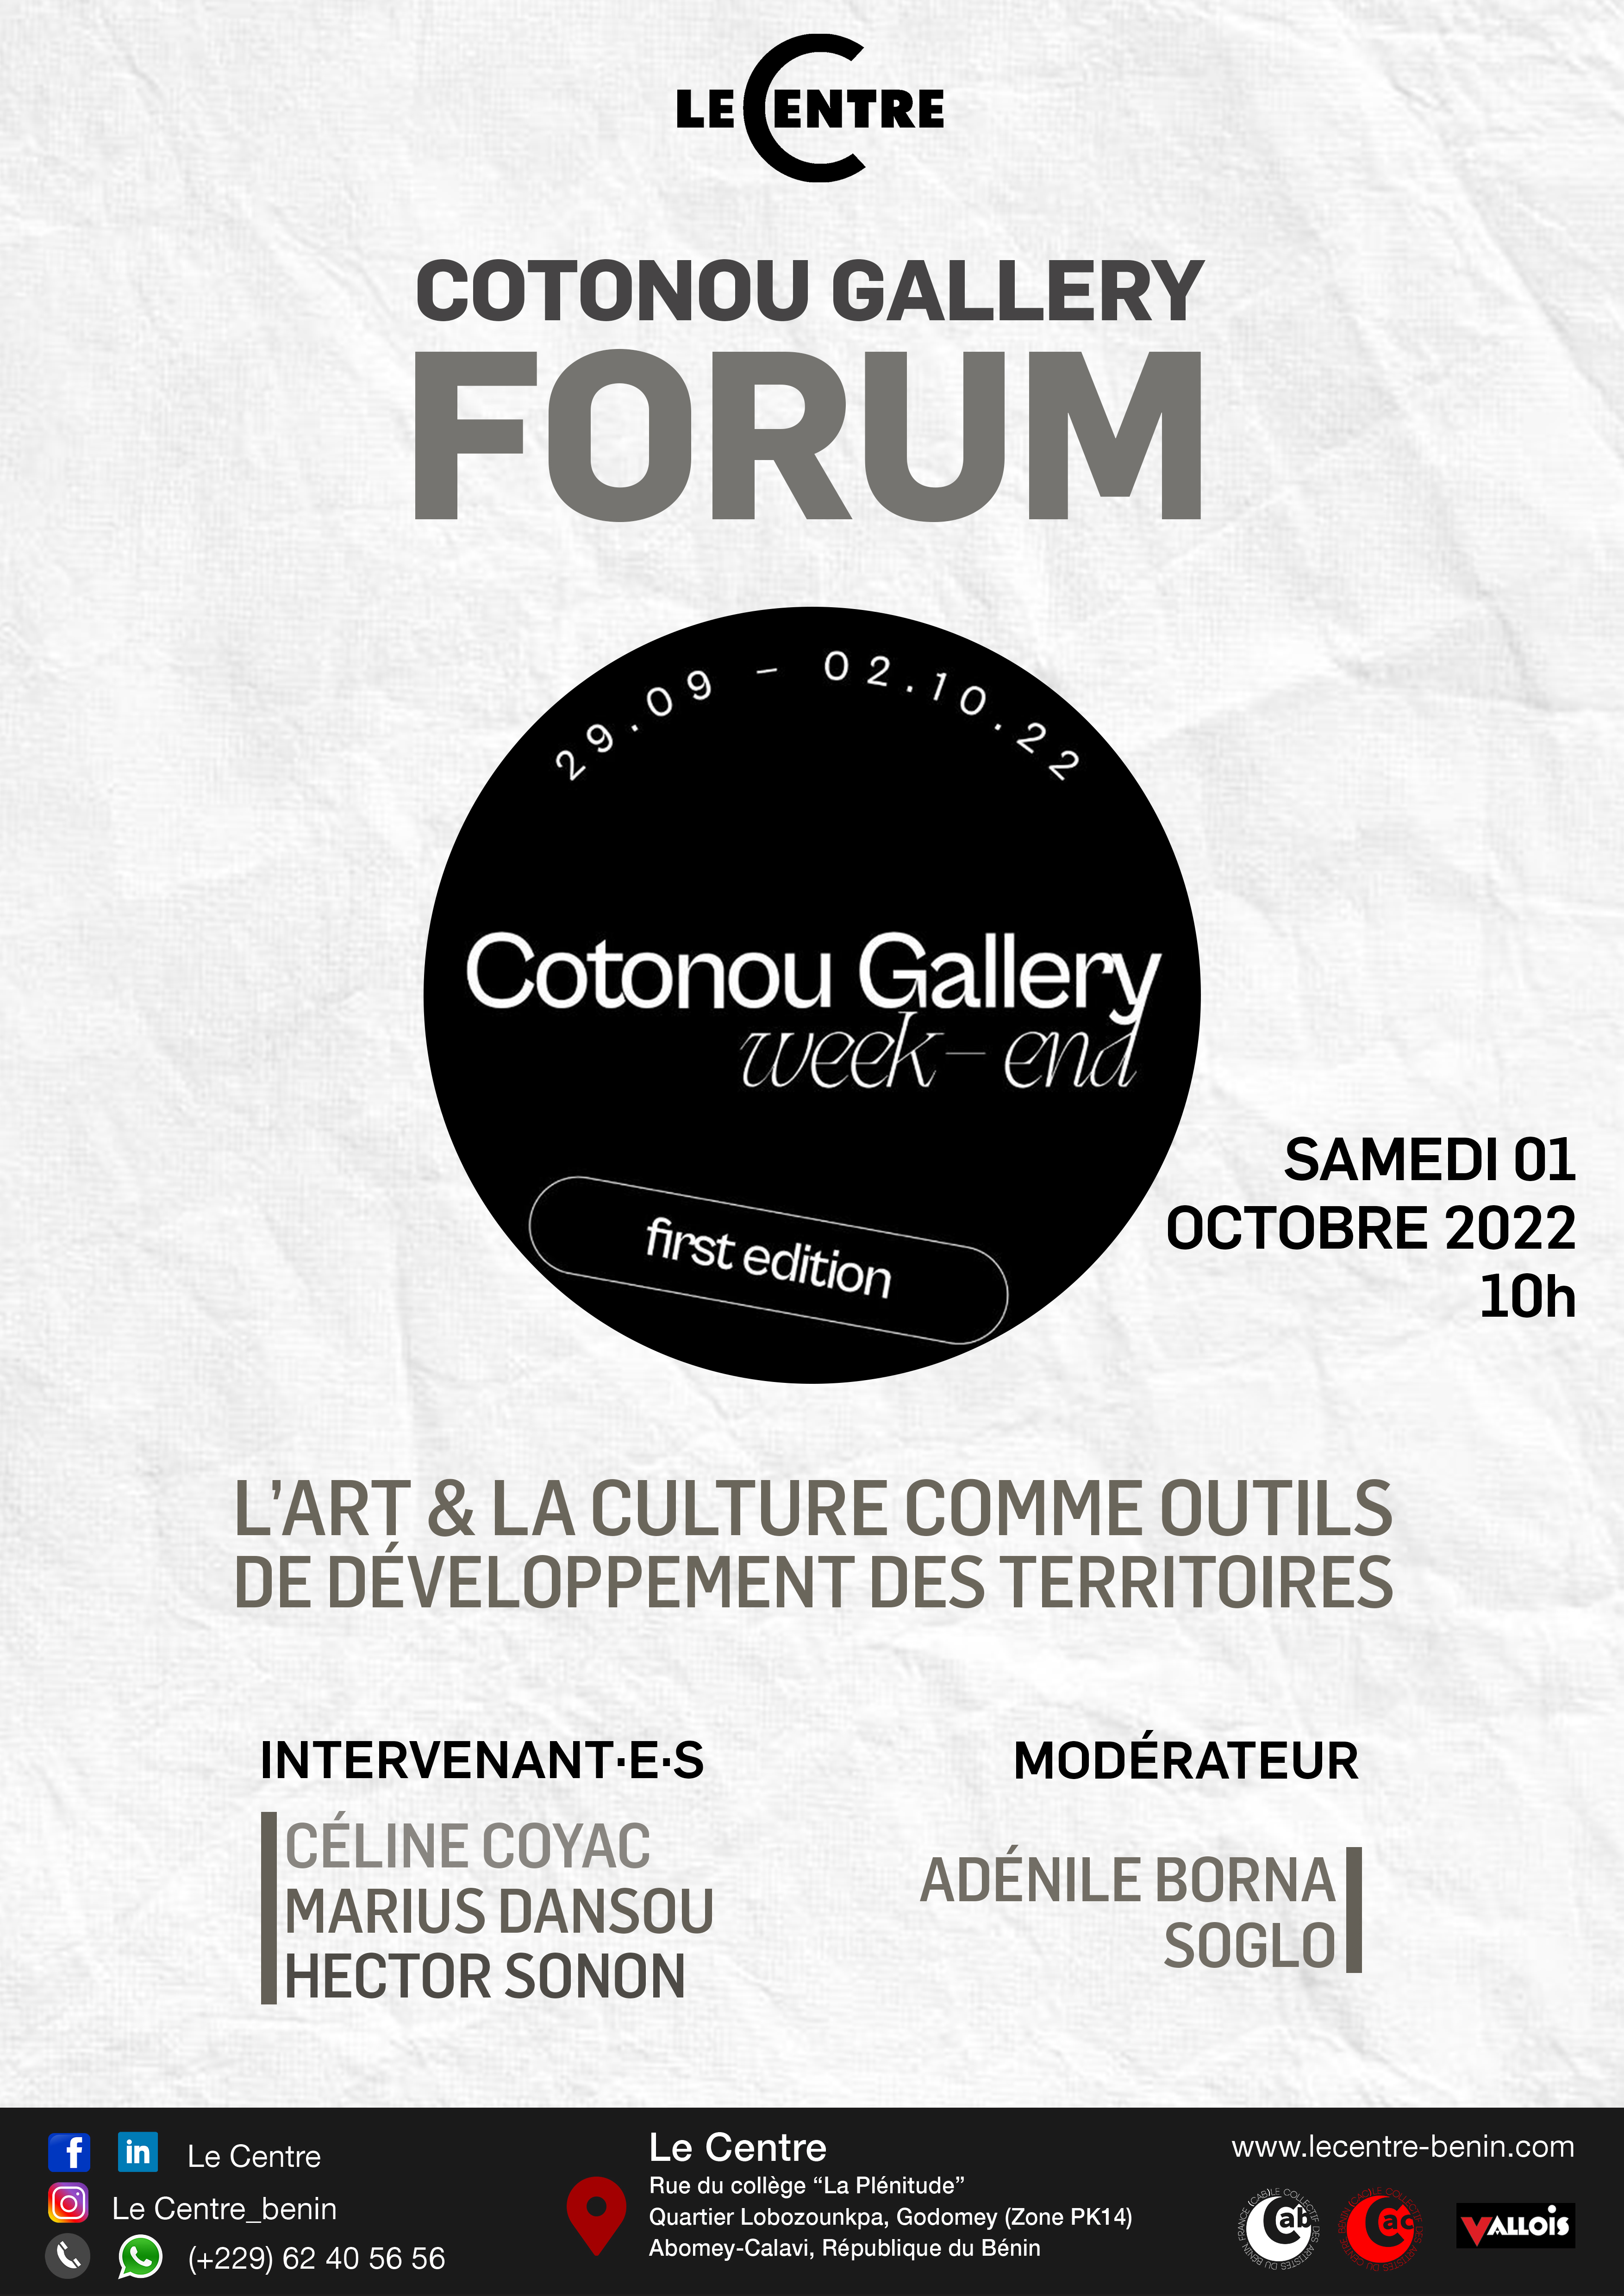 Cotonou Gallery Forum